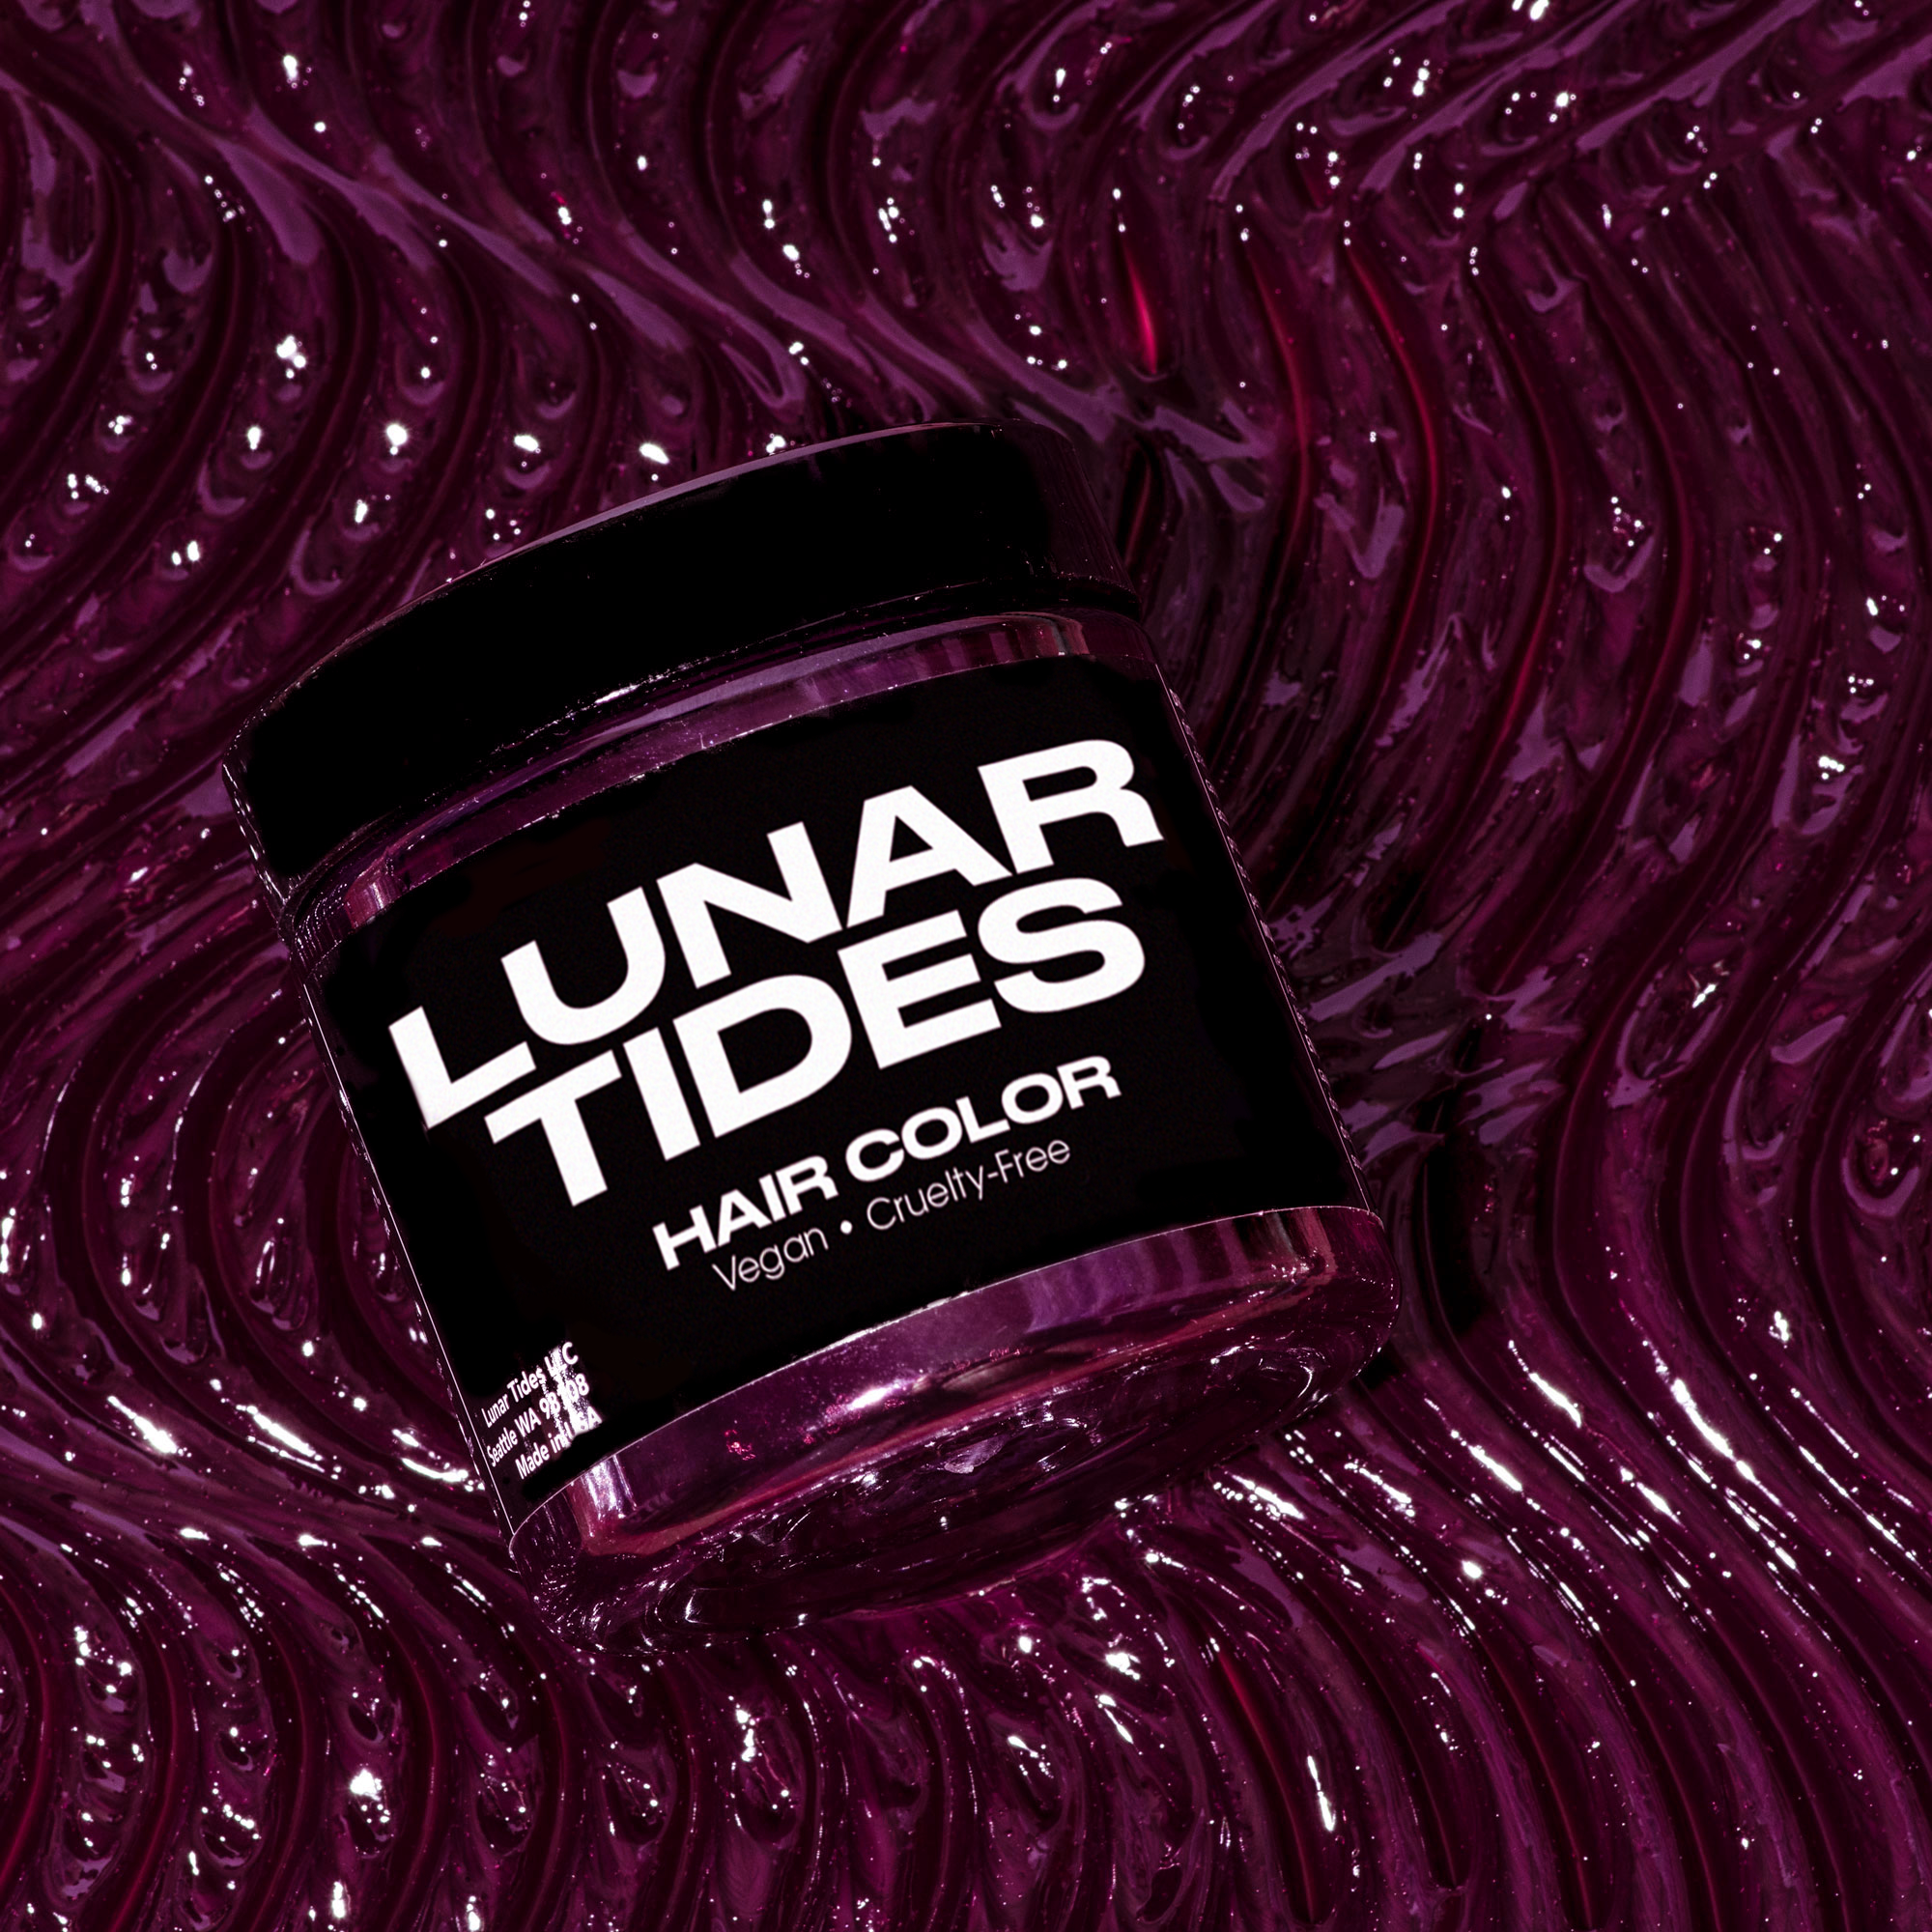 Lunar Tides Hair Dye - Pink DIY Ombre Hair Dye Kit